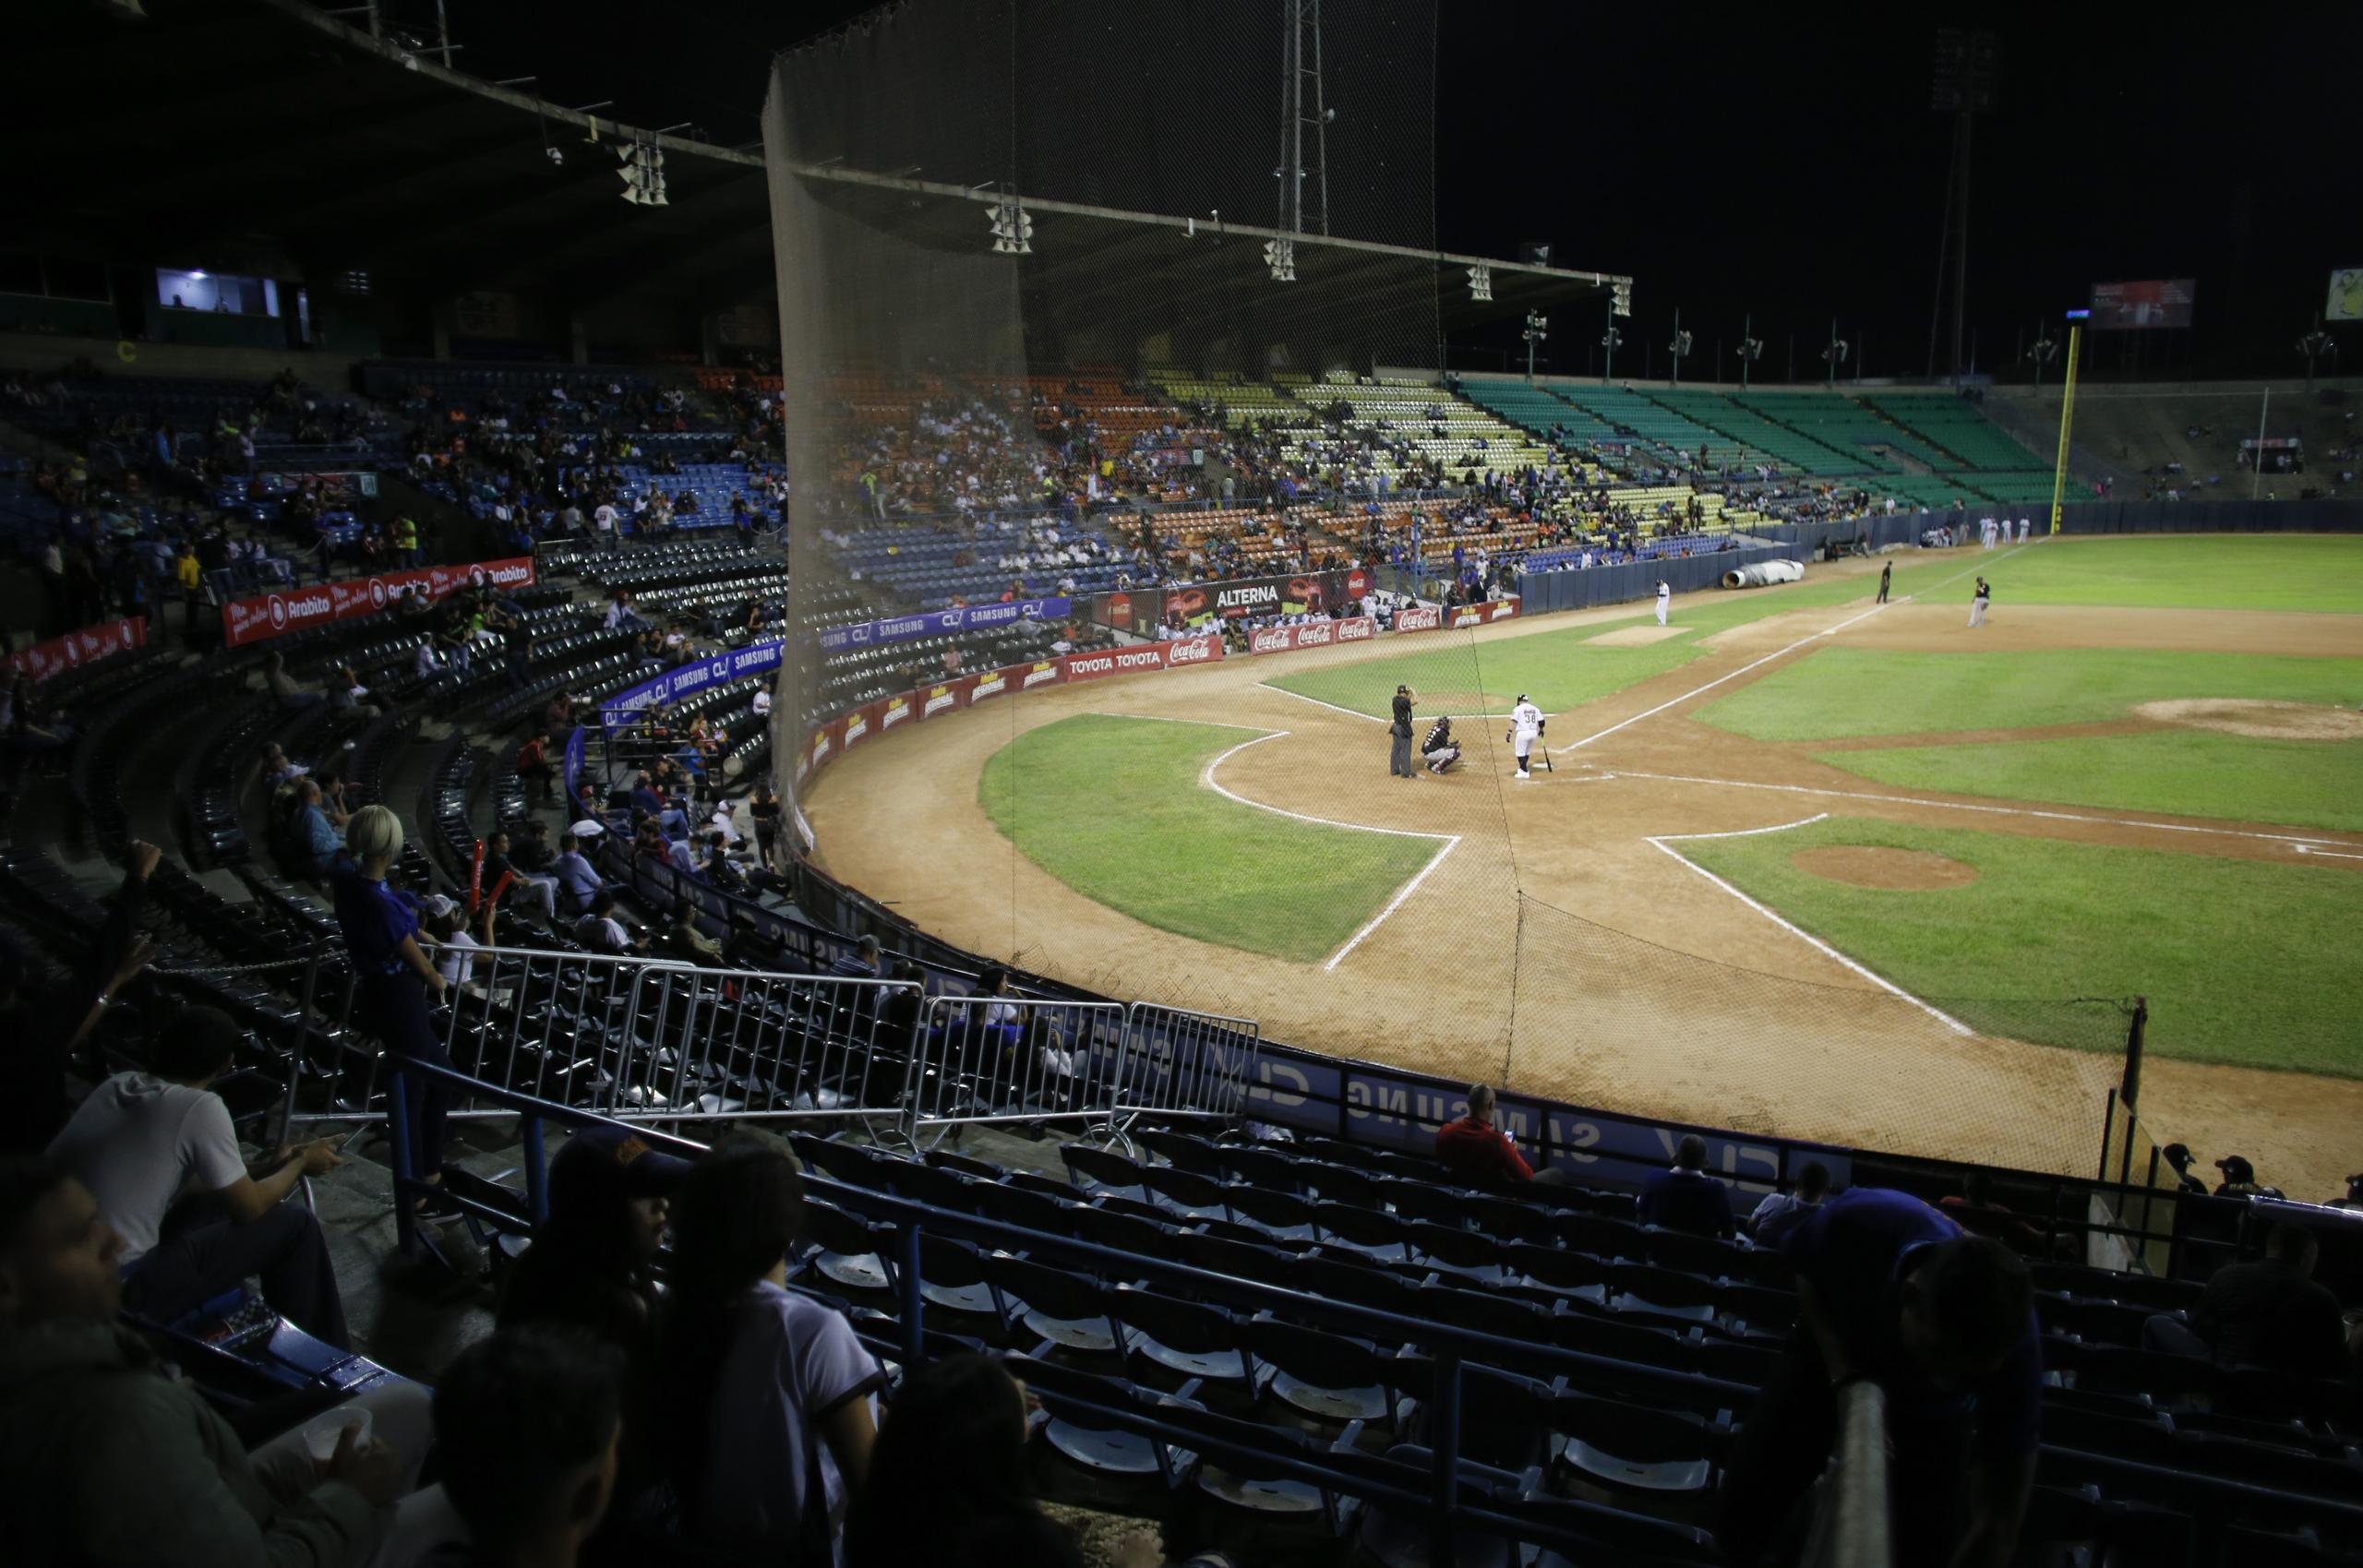 La Liga de Béisbol Profesional de Venezuela lleva varios años teniendo muchos problemas debido a sanciones contra el gobierno de Maduro.